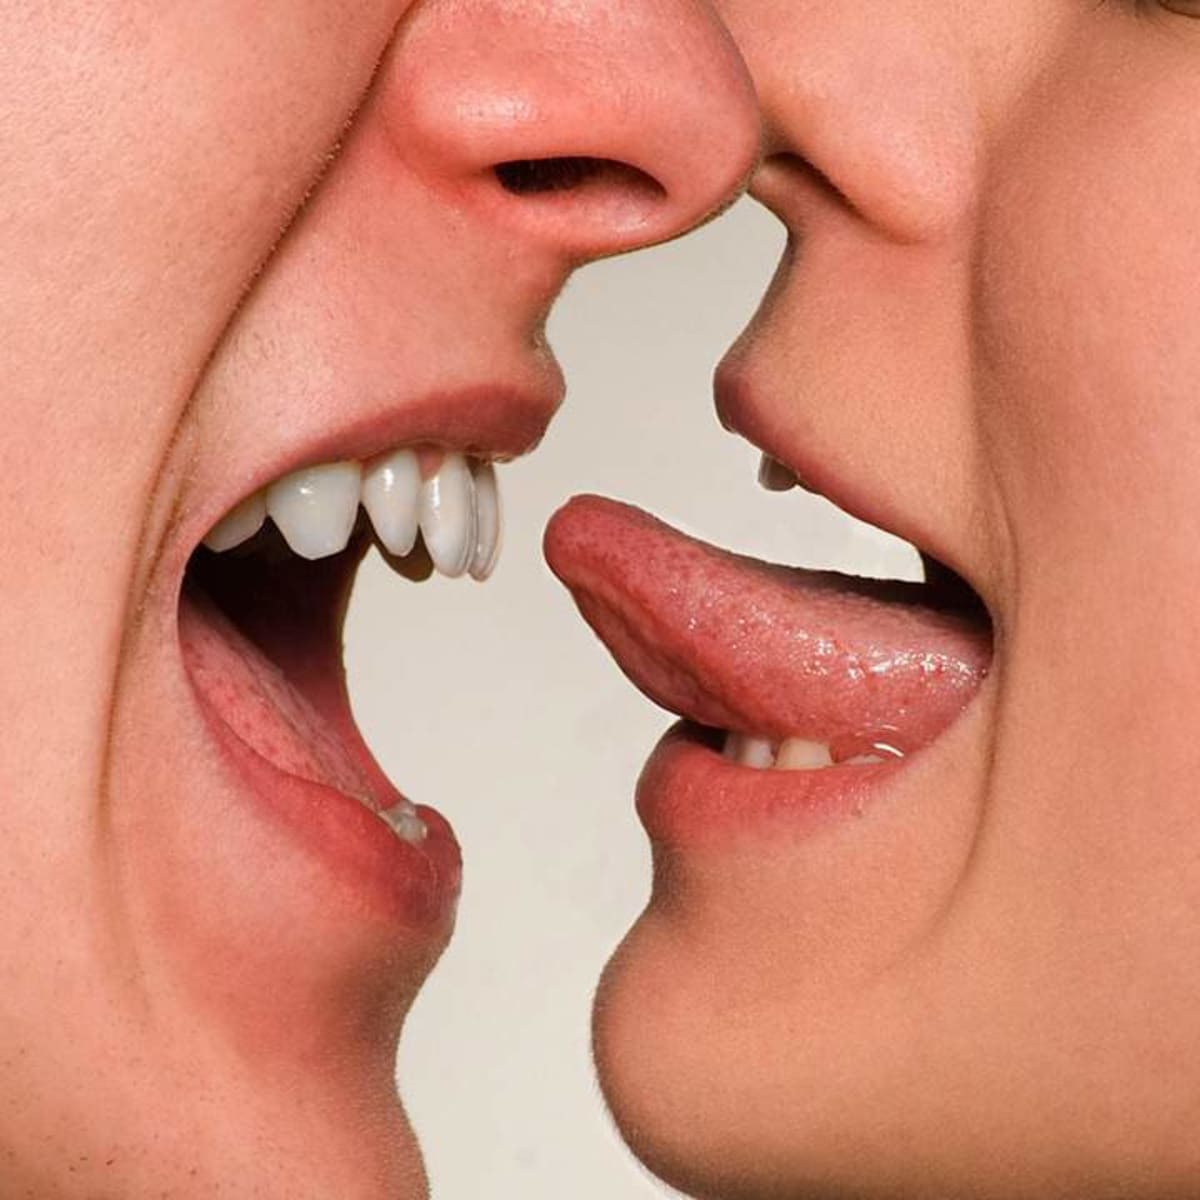 People tongue kissing